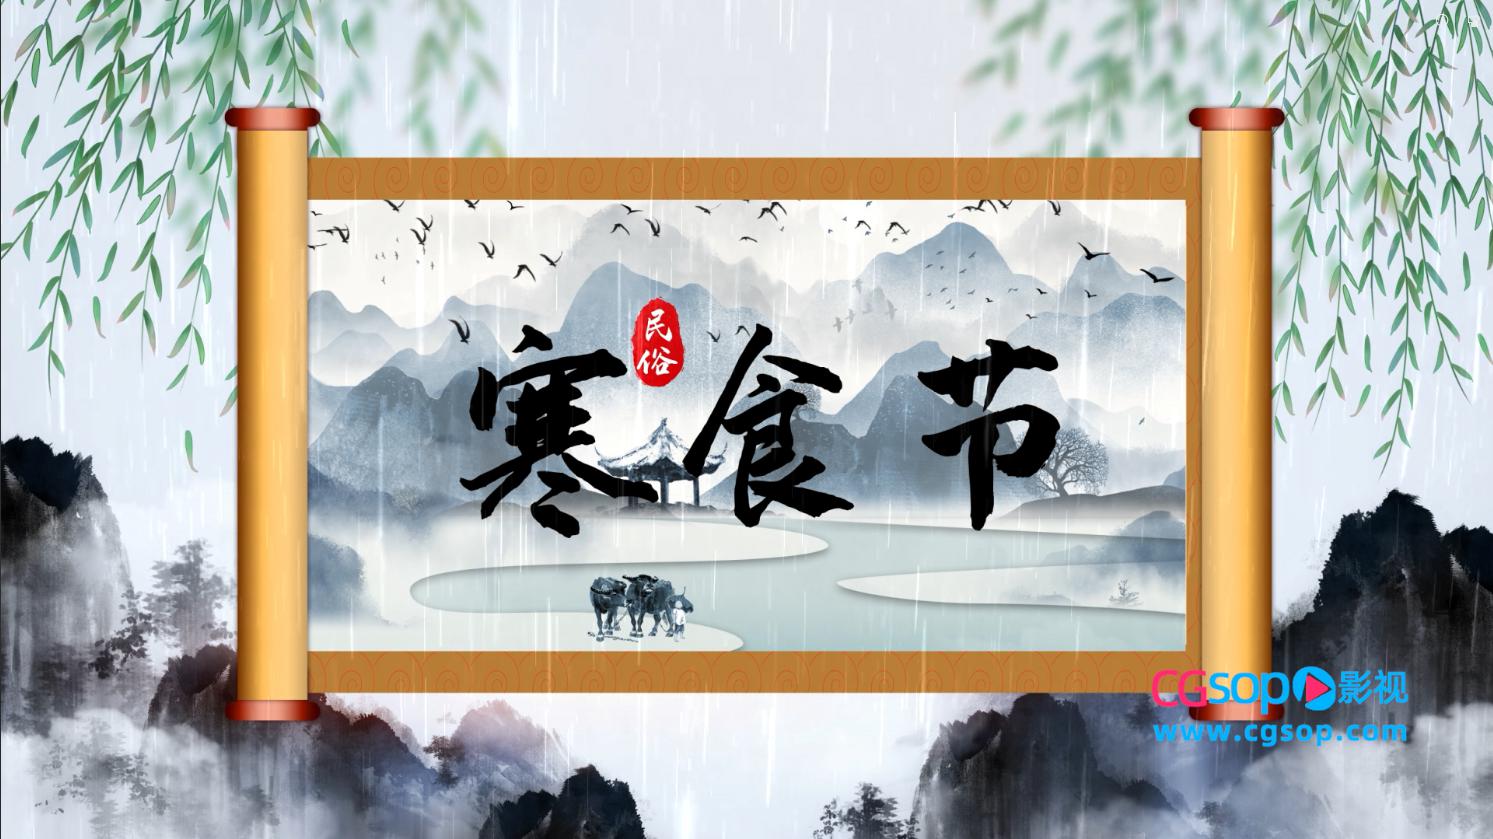 中国传统节日-清明节水墨片头动画